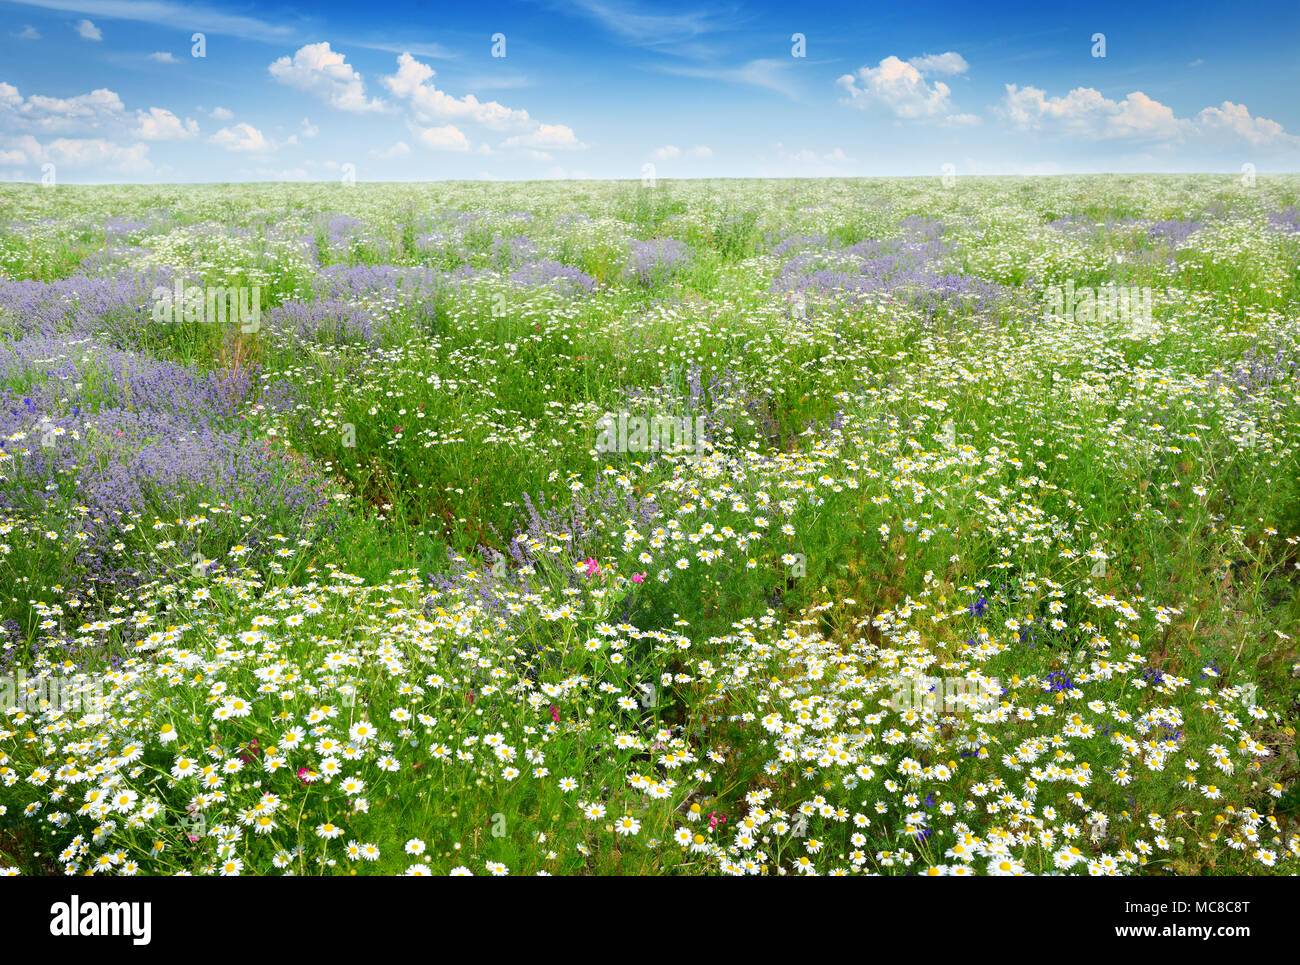 Il pittoresco campo coperto di erba, lavanda, margherite e altri fiori. Foto Stock